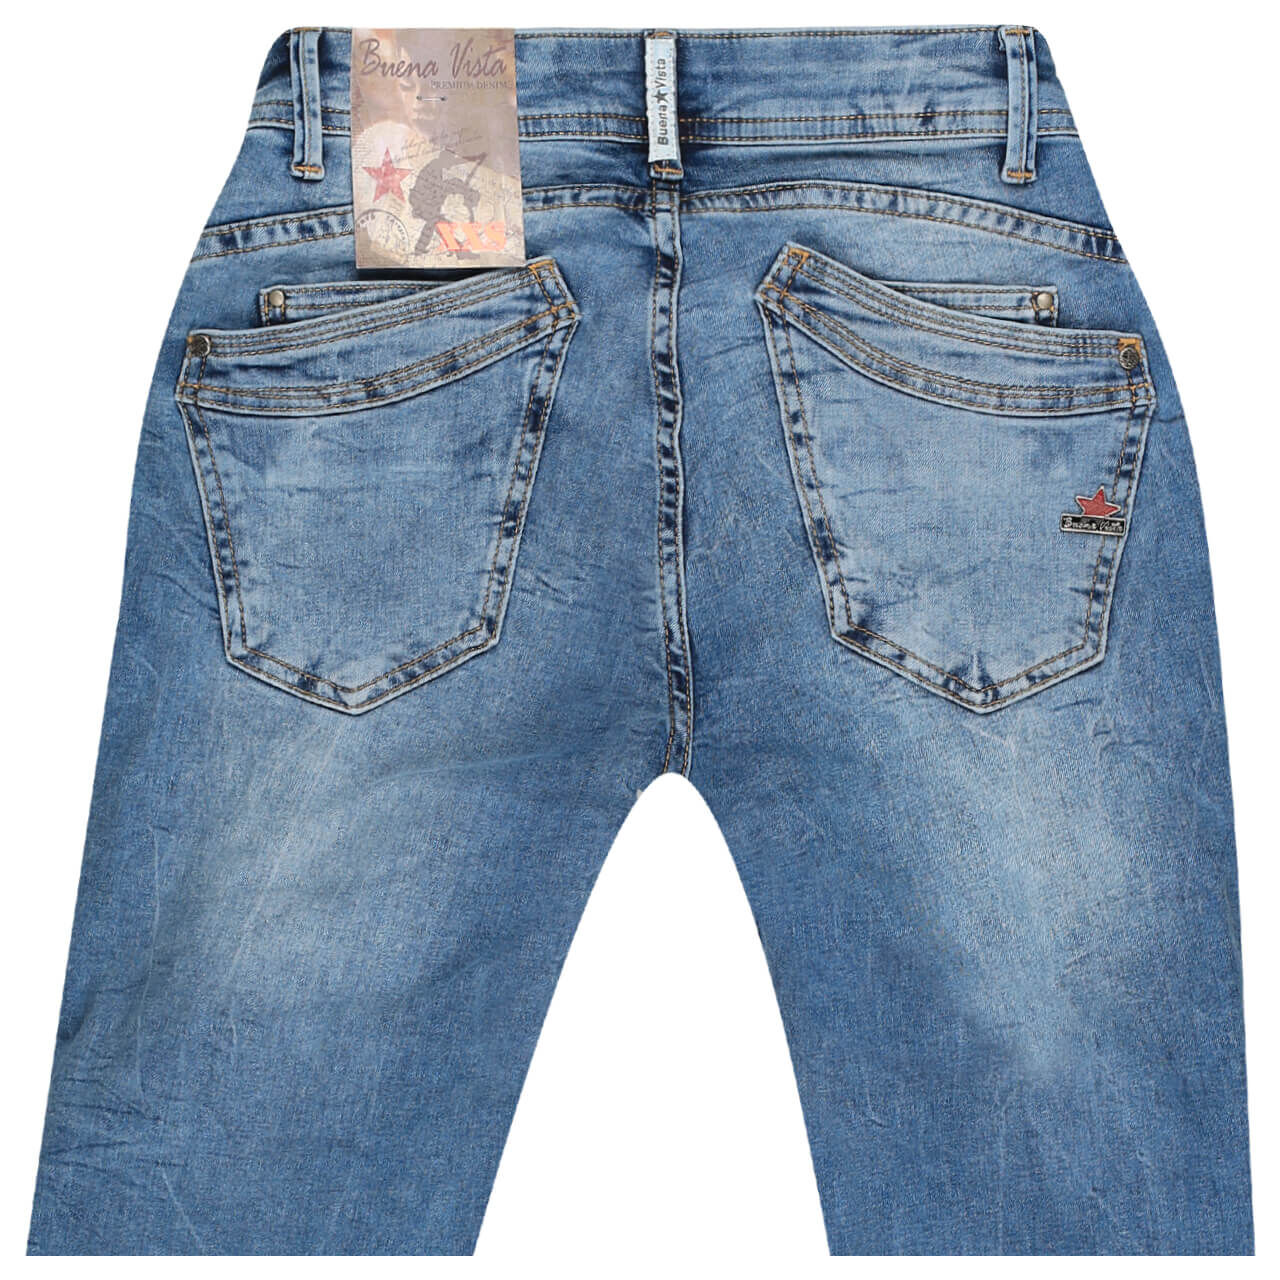 Buena Vista Jeans Malibu 7/8 Stretch Denim für Damen in Hellblau verwaschen mit Destroyed-Effekten, FarbNr.: 4804